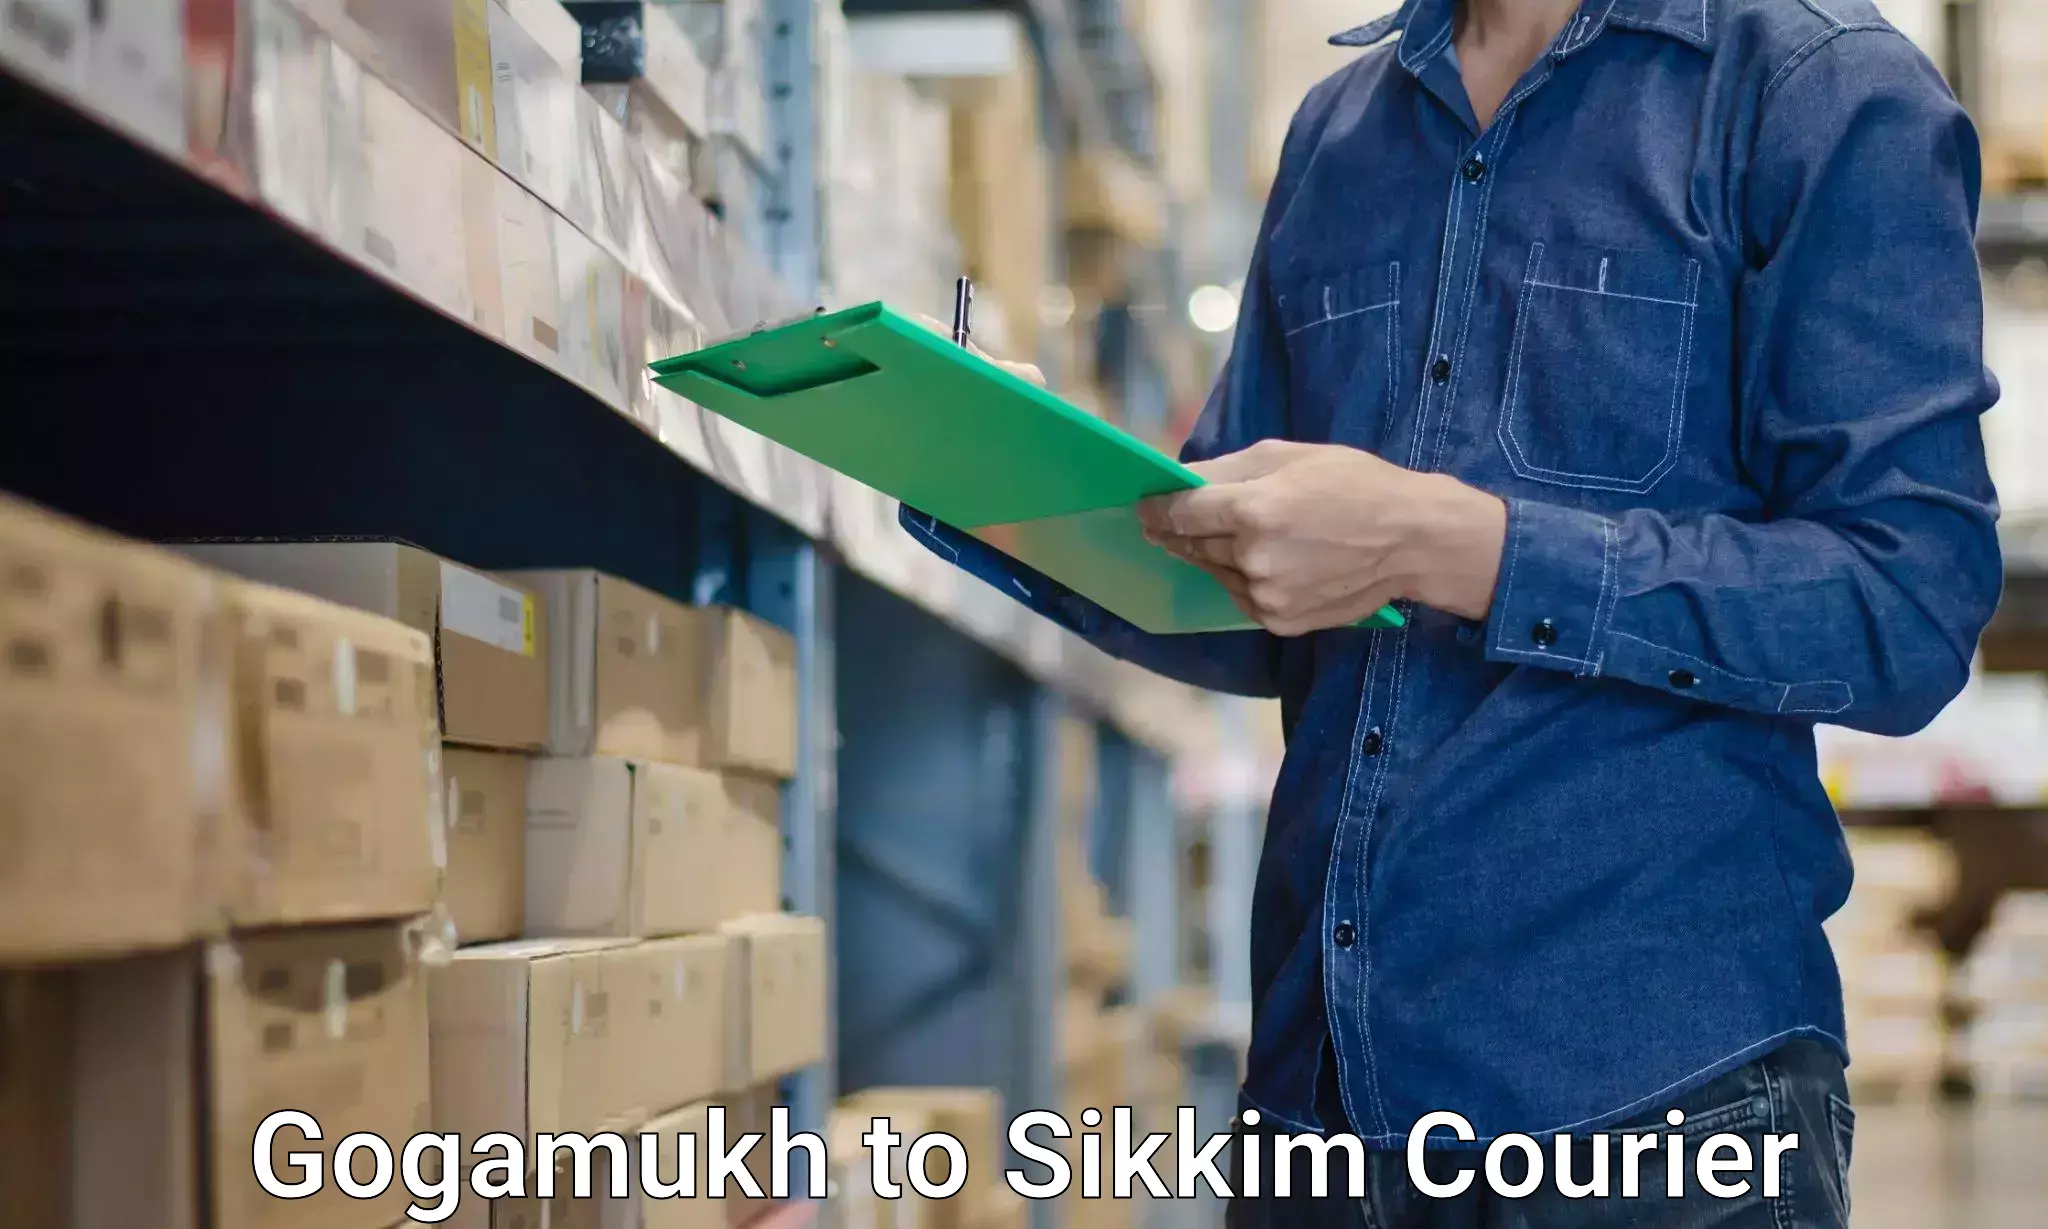 Expert household transport Gogamukh to Sikkim